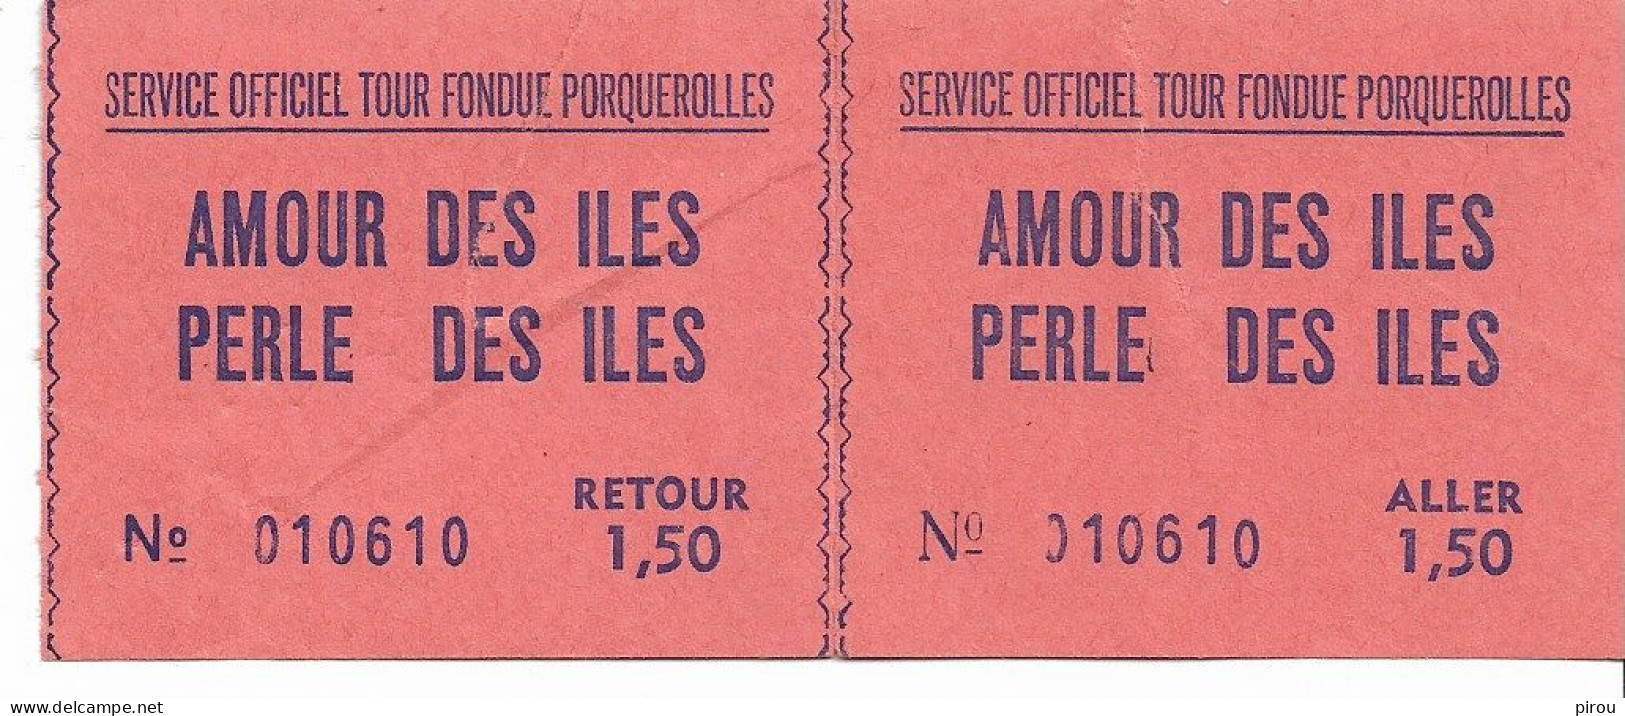 BILLETS De BATEAU POUR PORQUEROLLES 1969 - Tickets - Vouchers